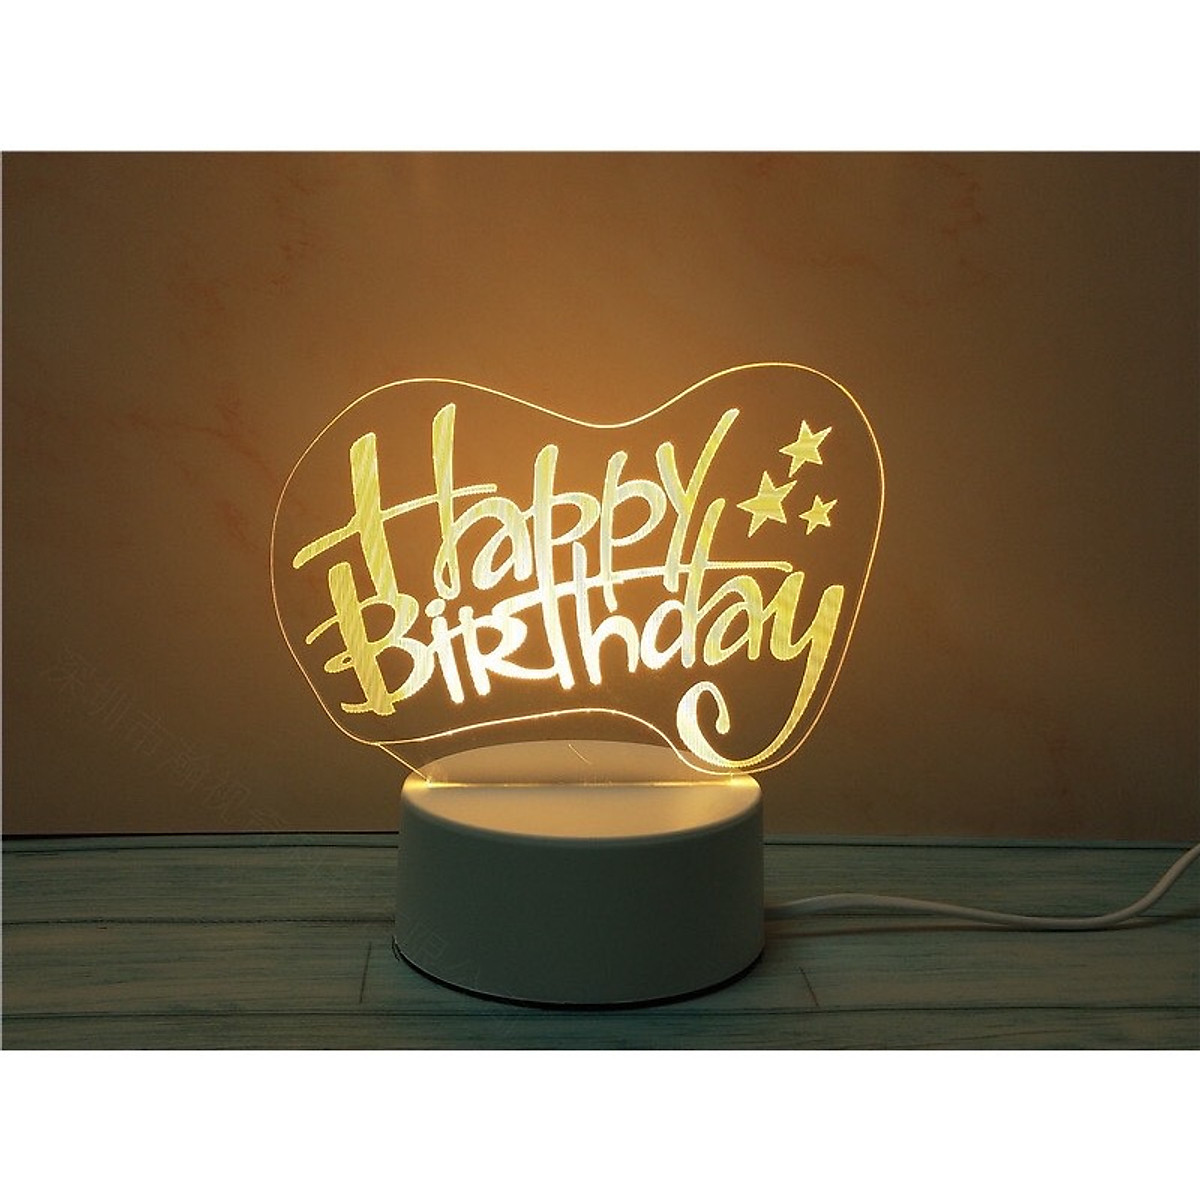 Quà tặng sinh nhật - Đèn led 3D khắc tên theo yêu cầu - Phụ kiện ...